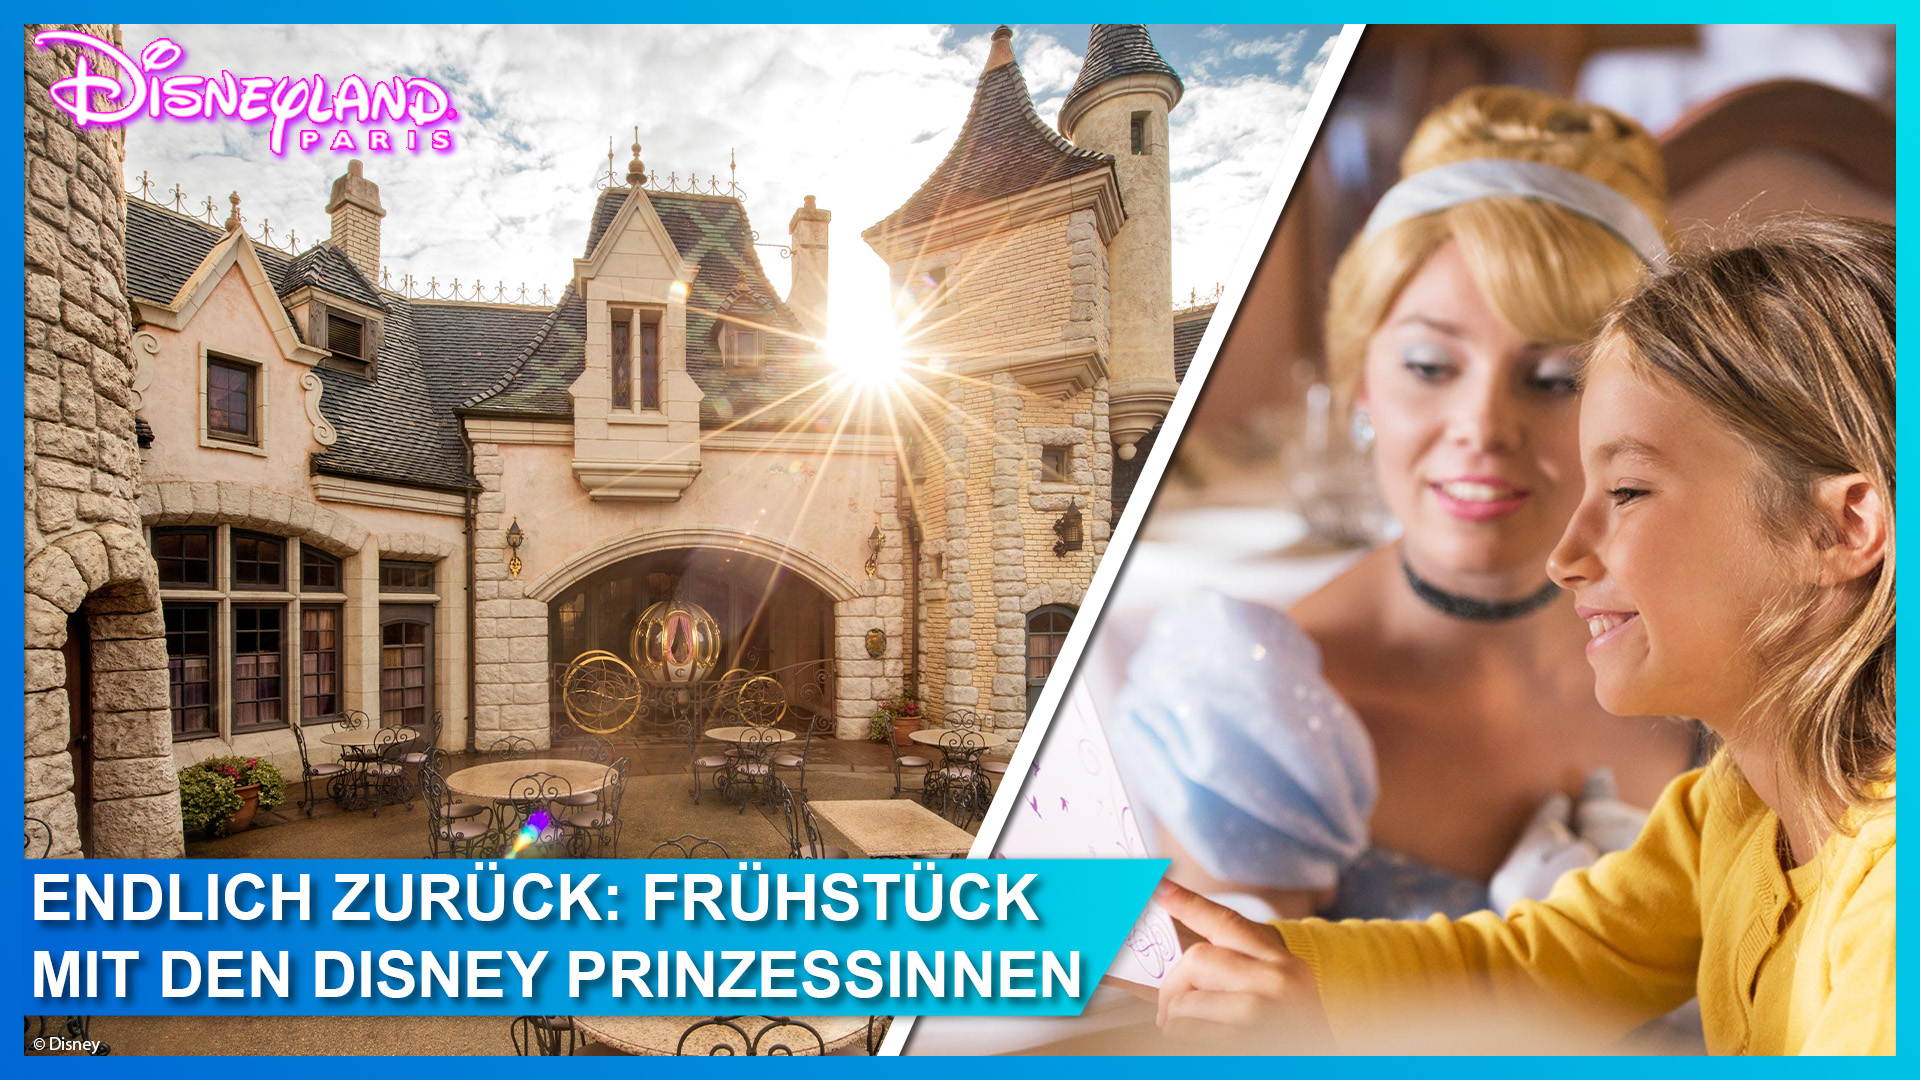 Frühstücken mit den Disney Prinzessinnen – das Character Breakfast in der Auberge de Cendrillon kehrt nach Disneyland Paris zurück